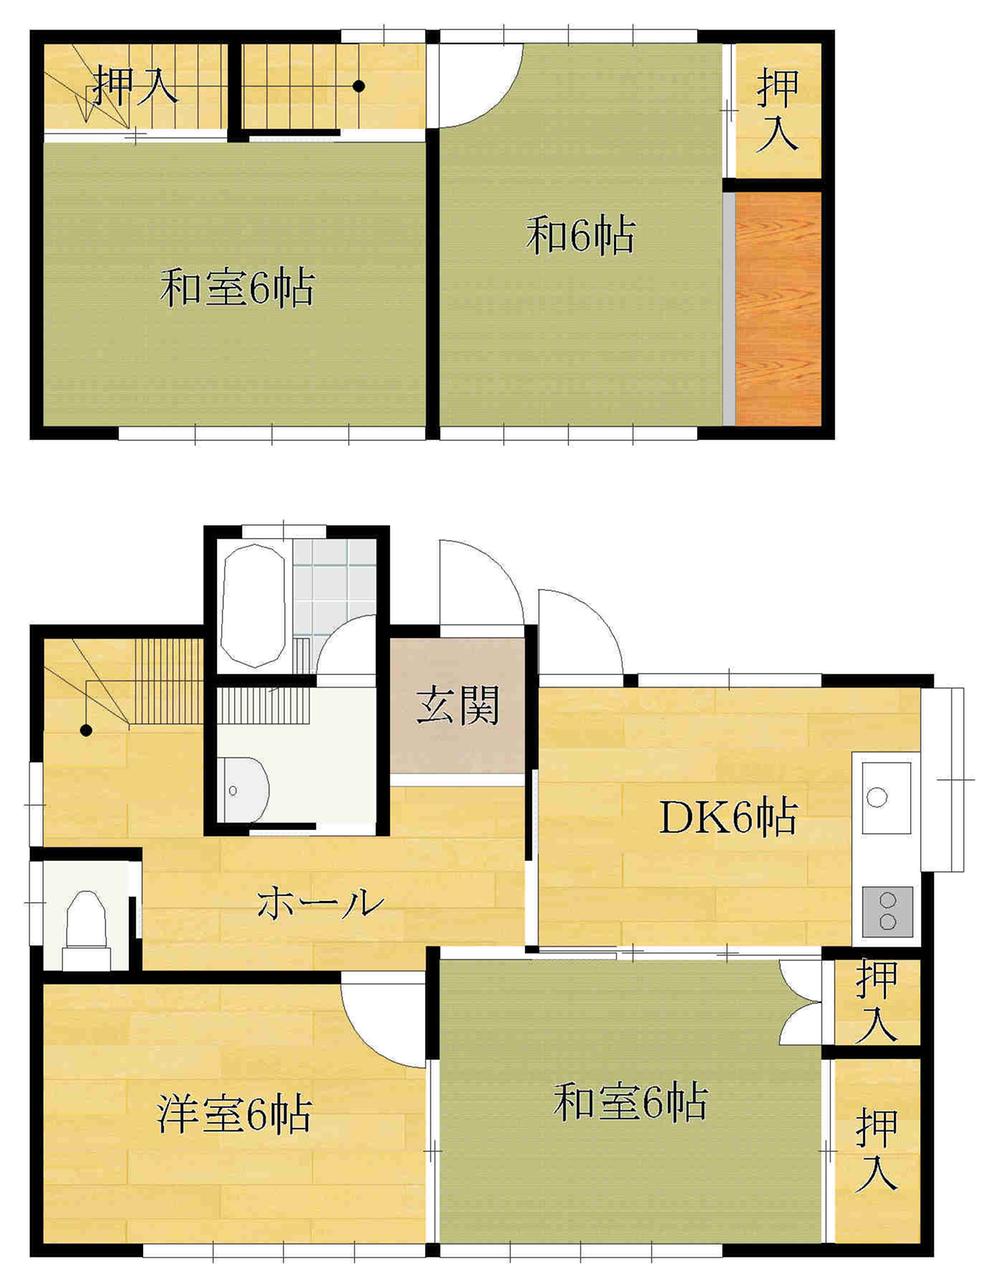 Floor plan. 13 million yen, 4DK, Land area 186.04 sq m , Building area 75.98 sq m